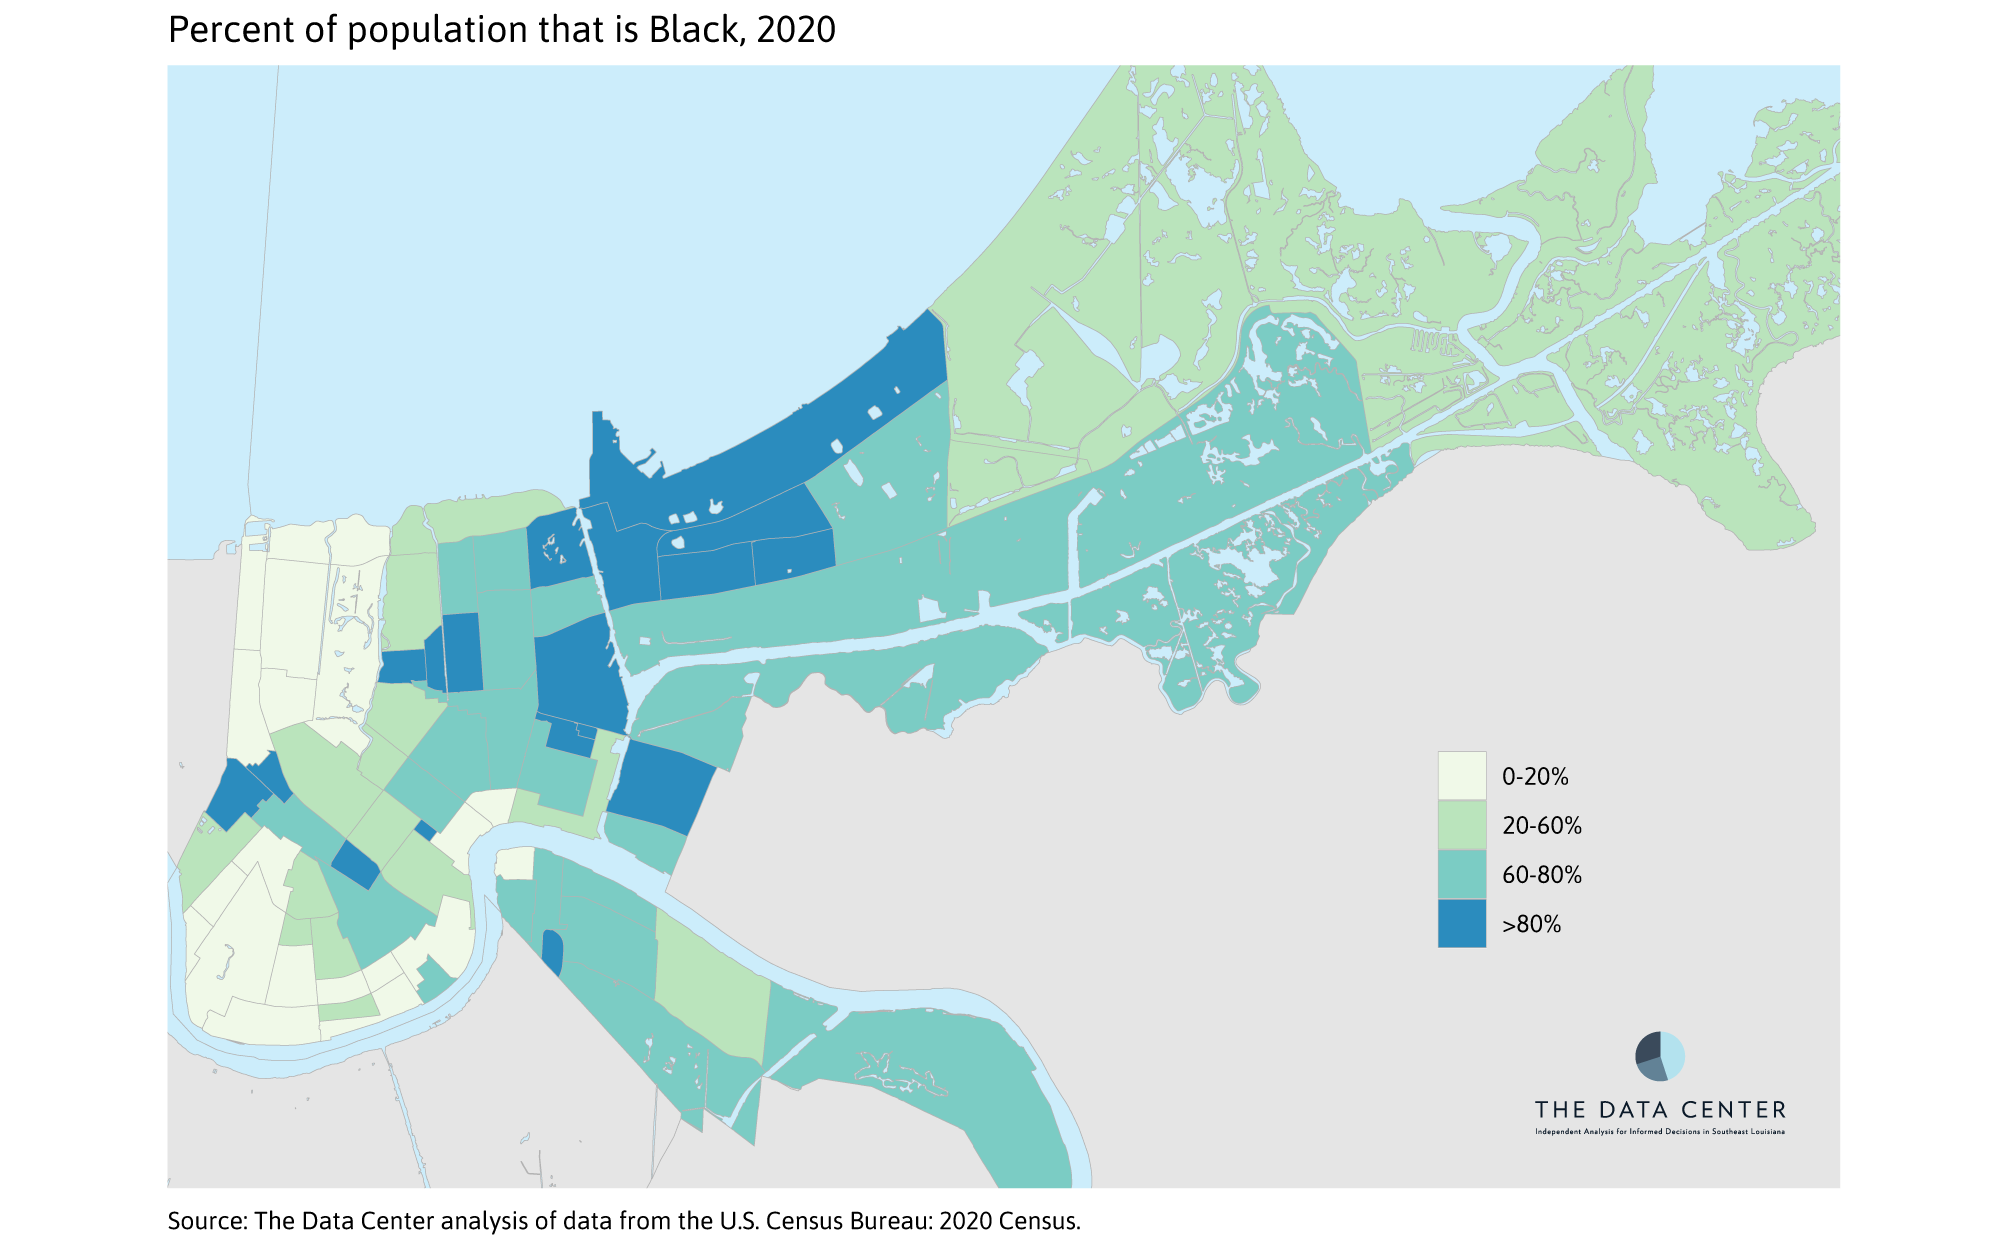 Percent Black 2020